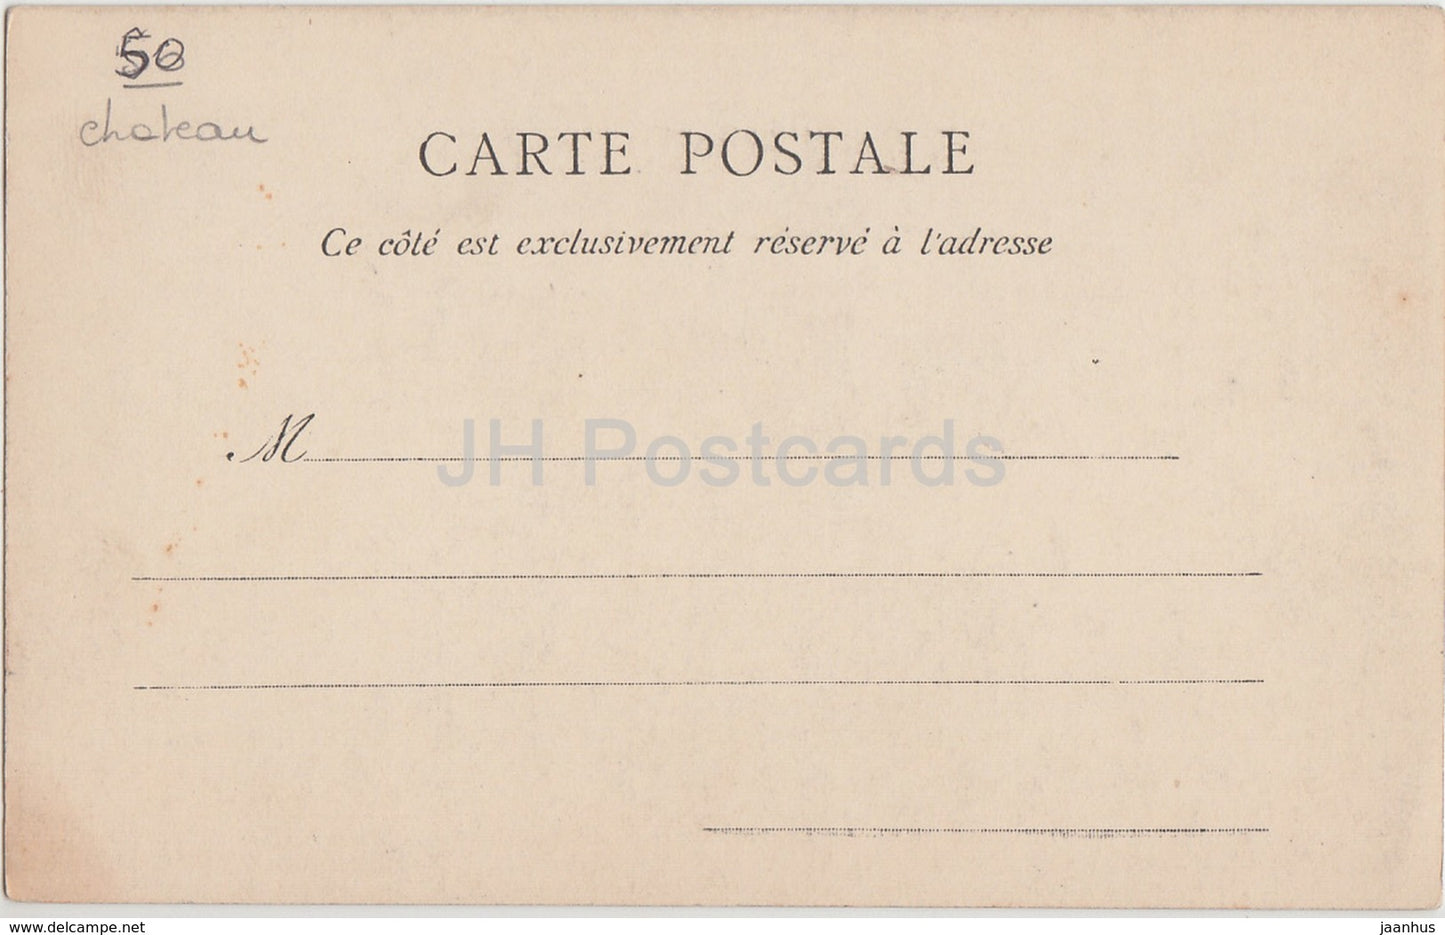 Saint Hilaire Du Harcouet - Vieux Chateau du Jardin - castle - 3119 - old postcard - France - unused